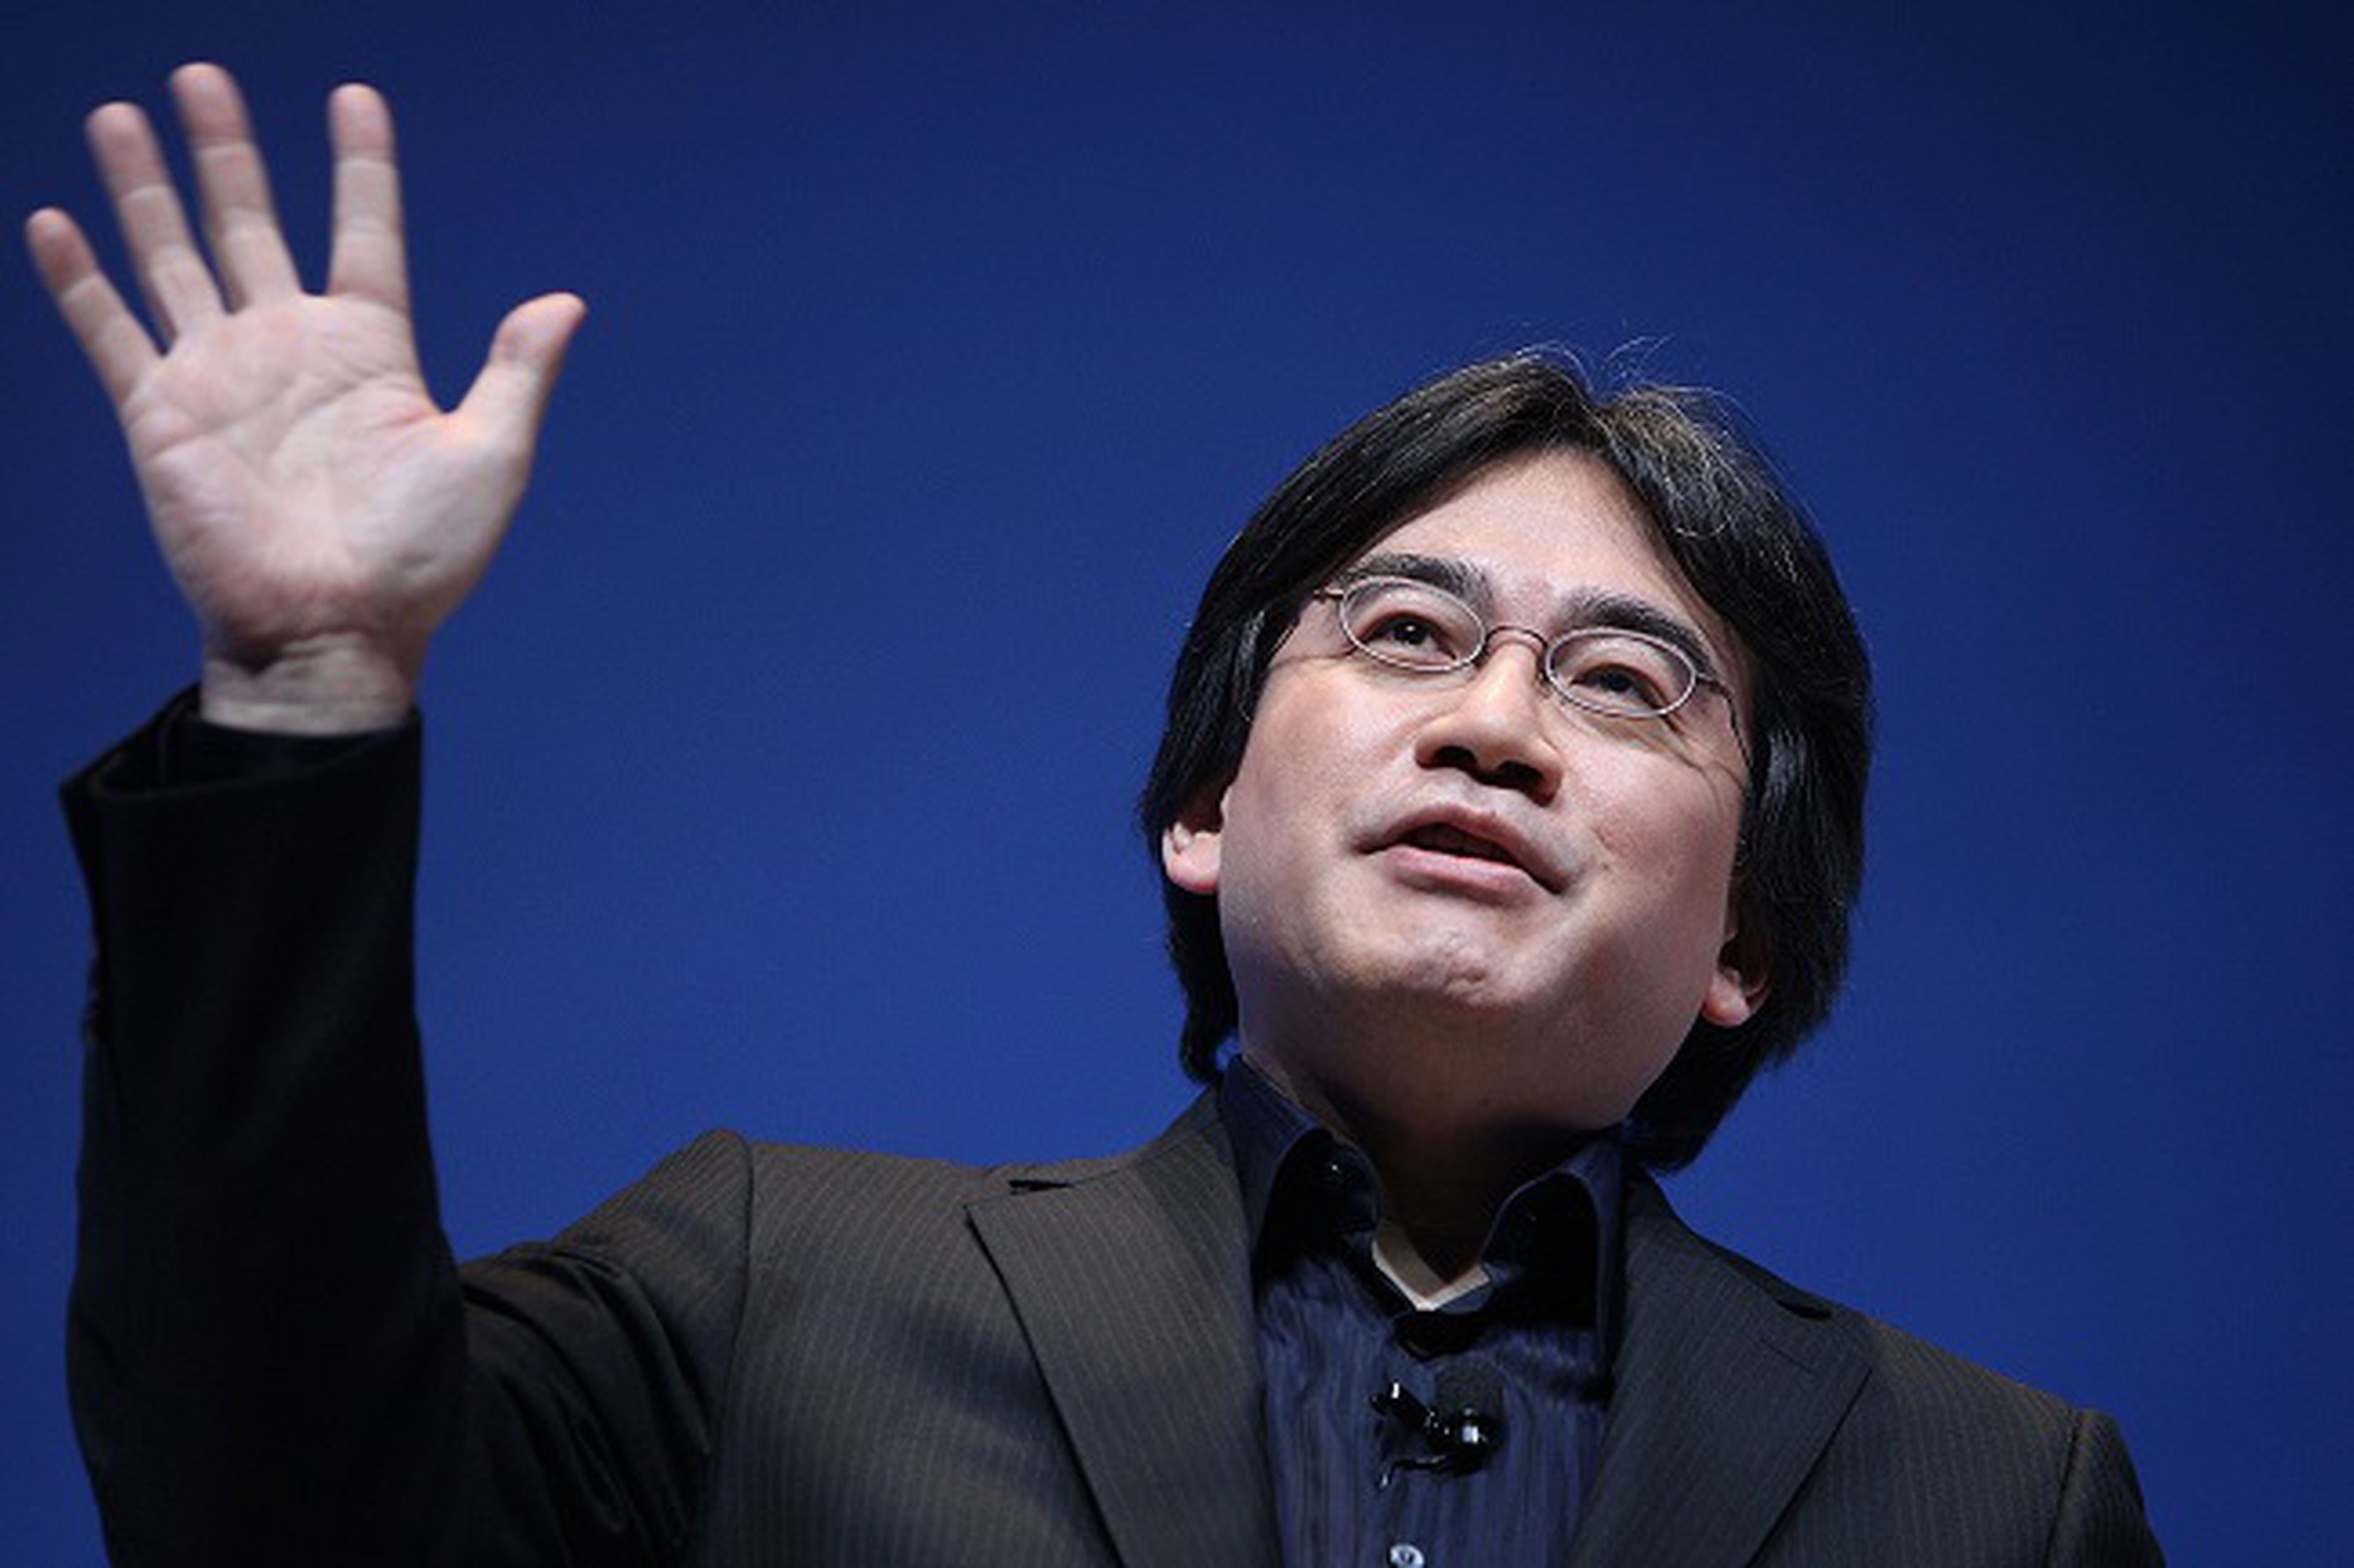 La muerte de Satoru Iwata, reacciones de la industria